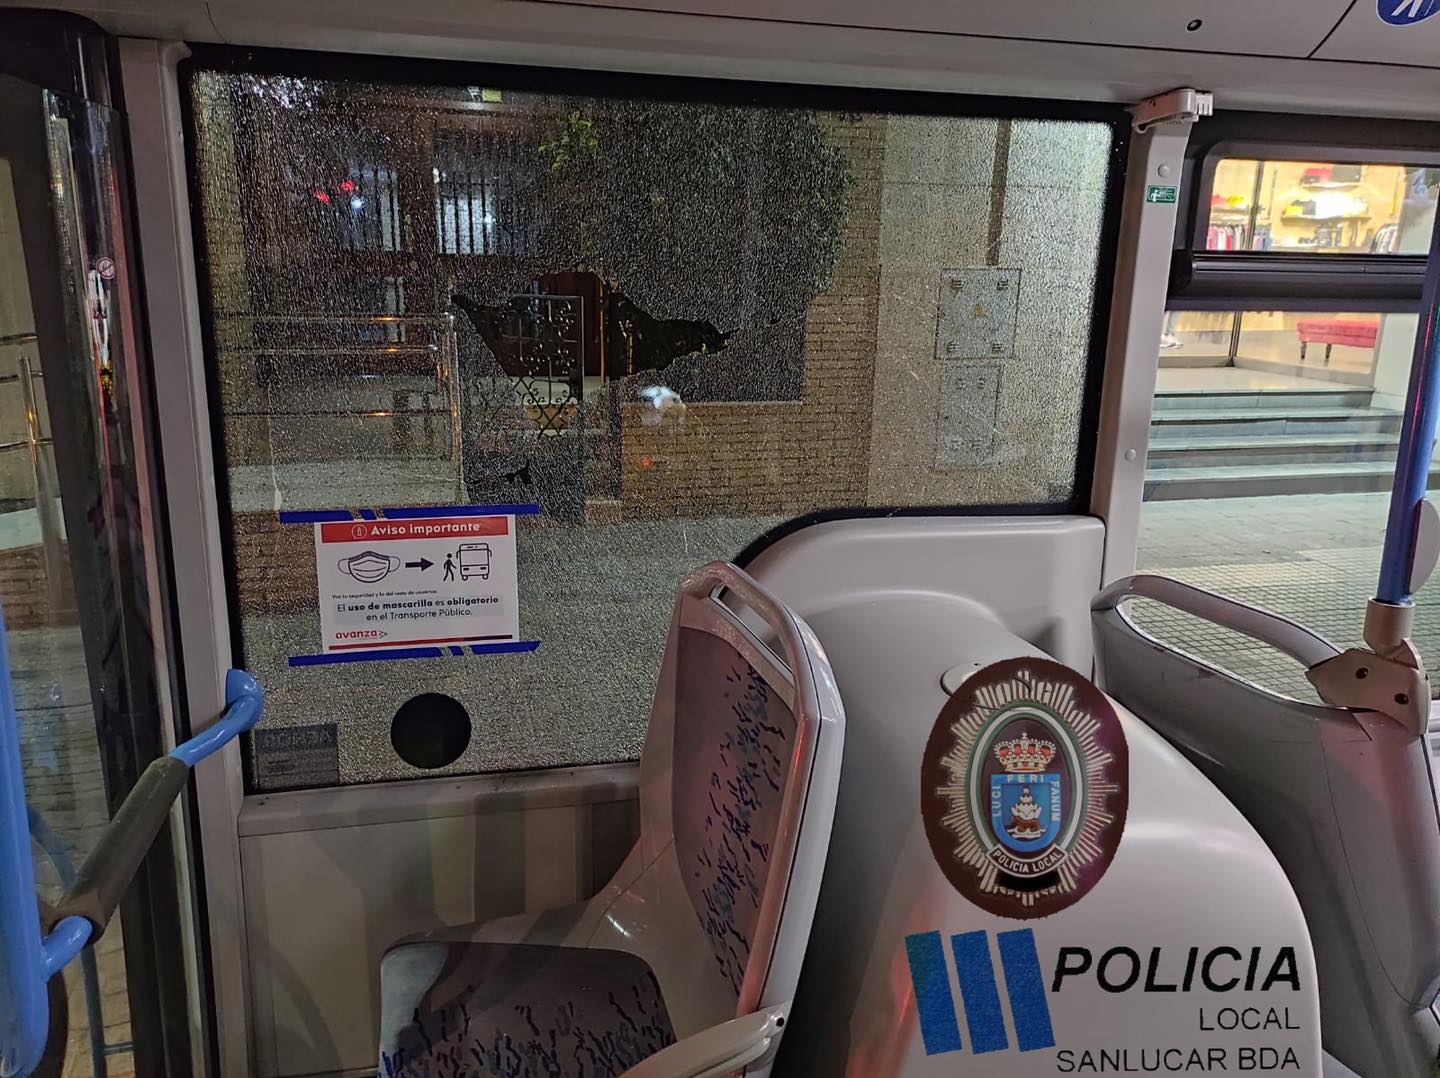 Niños de 12 años rompen a pedradas las ventanas de un autobús urbano en Sanlúcar